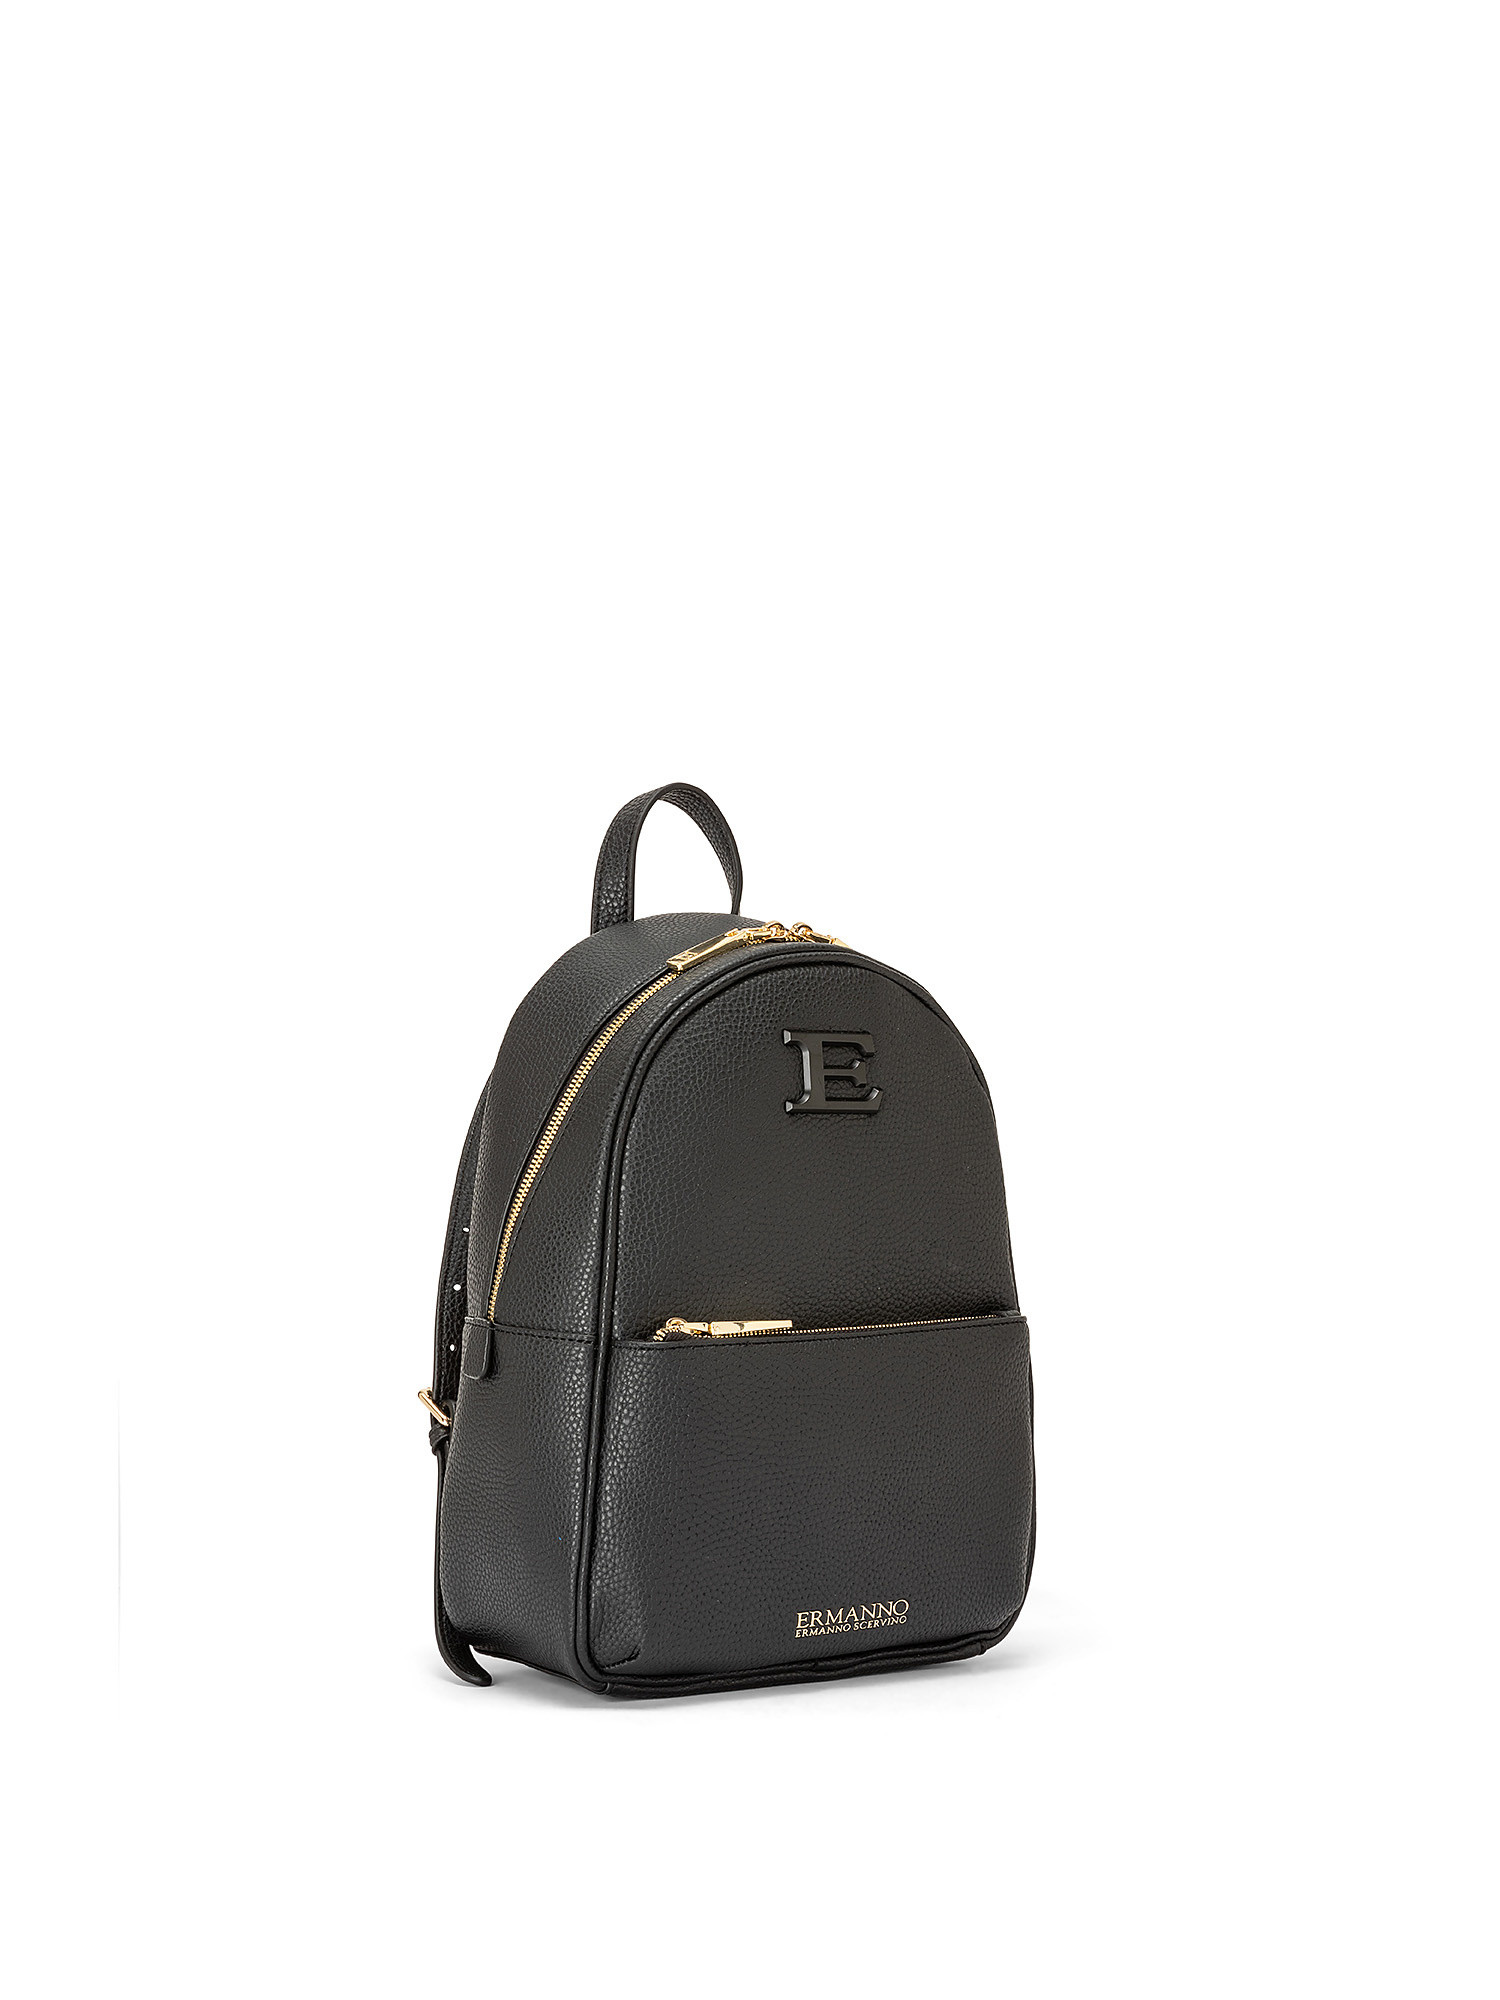 Eba backpack, Black, large image number 1